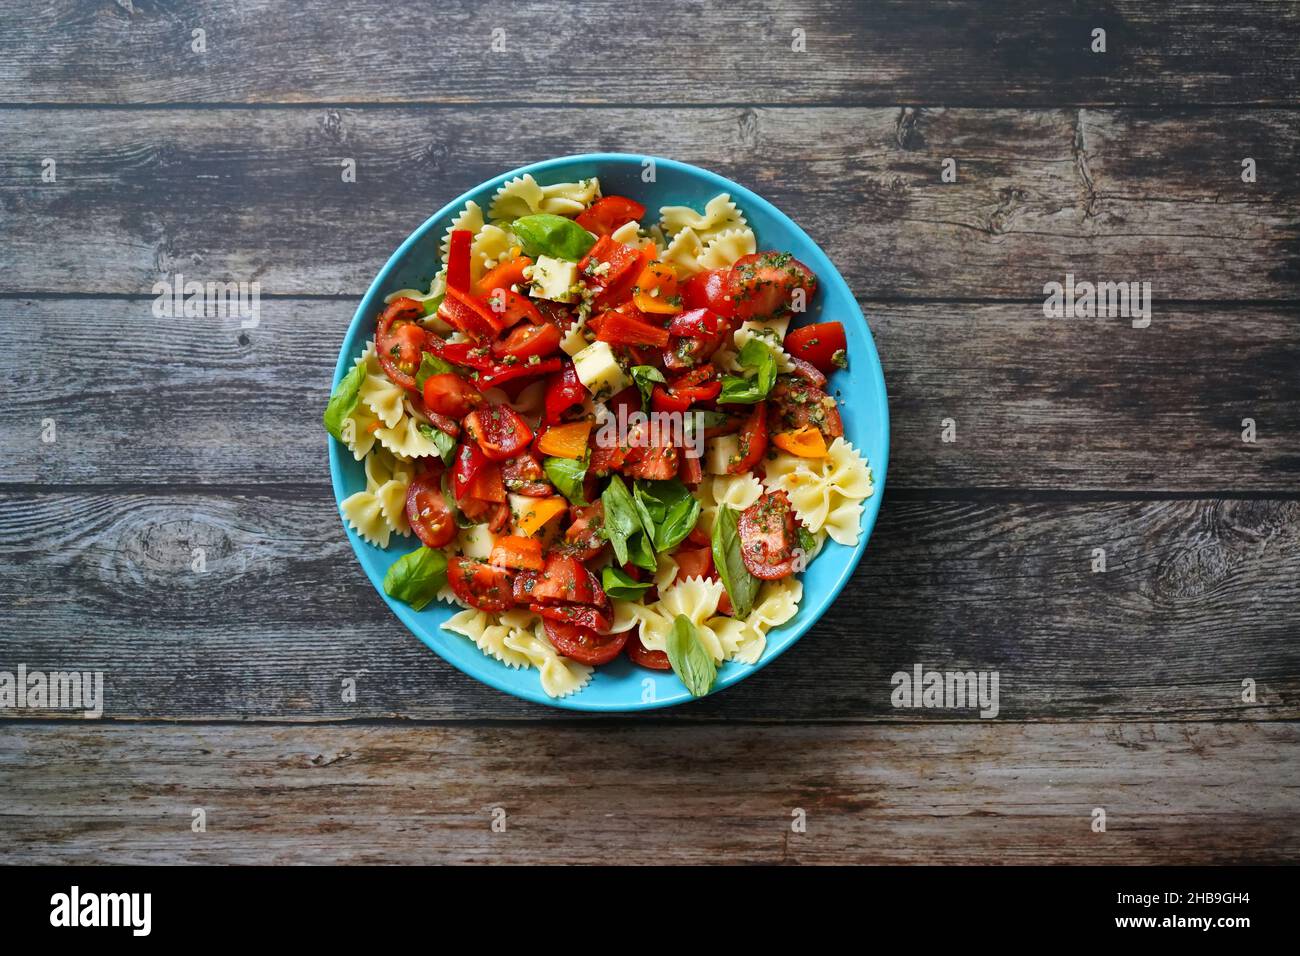 Leichter und saftiger Sommersalat mit Nudeln, Tomaten, Käsewürfeln, Paprika und Basilikum in einer blauen Schüssel. Dunkler Holzhintergrund. Stockfoto